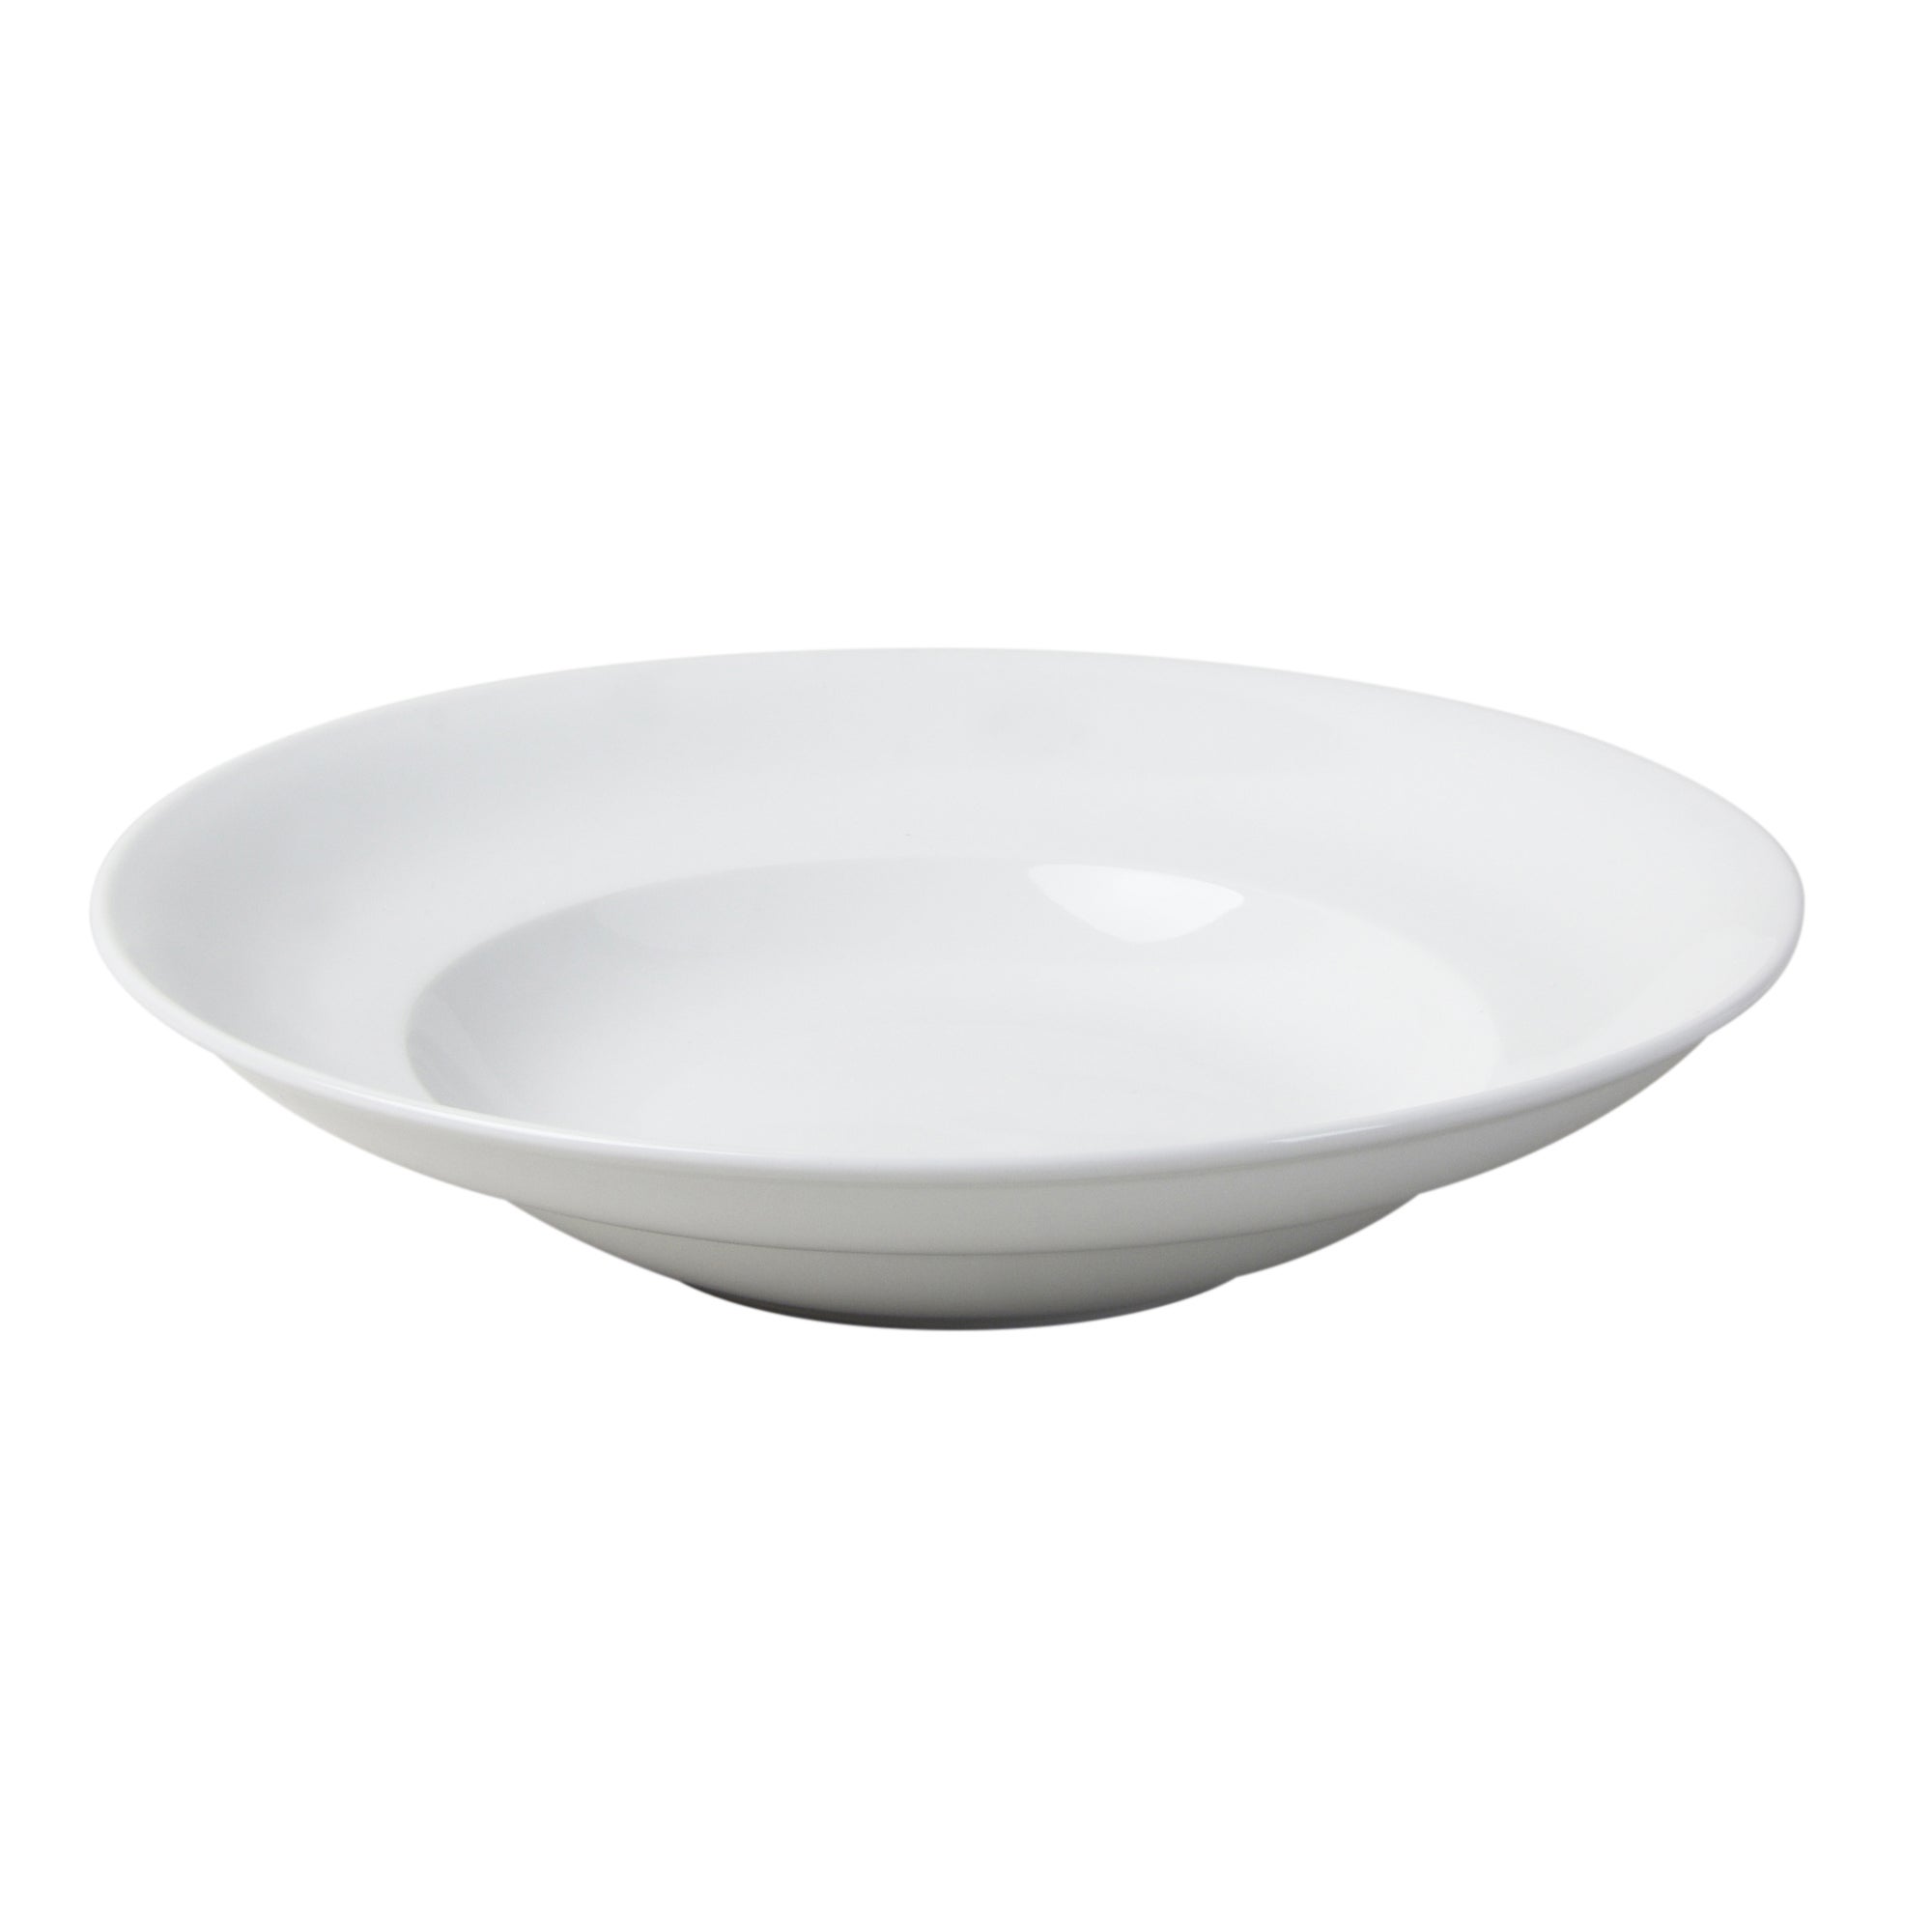 Purity Rim Porcelain Pasta Bowl